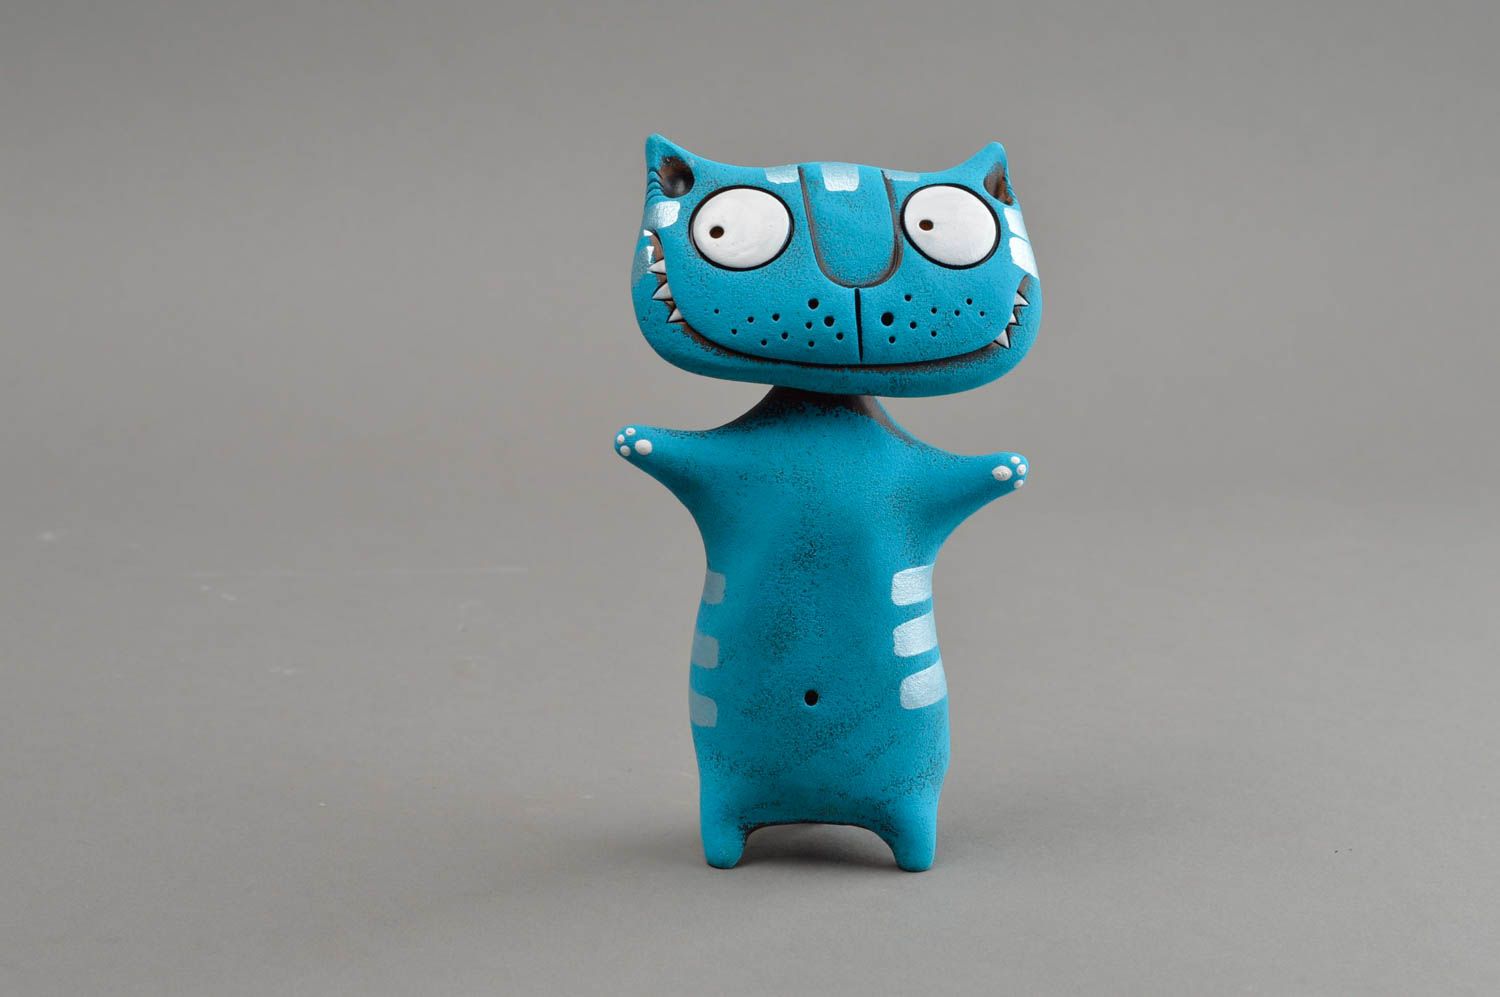 Синяя глиняная статуэтка ручной работы авторского дизайна расписная Кот фото 2